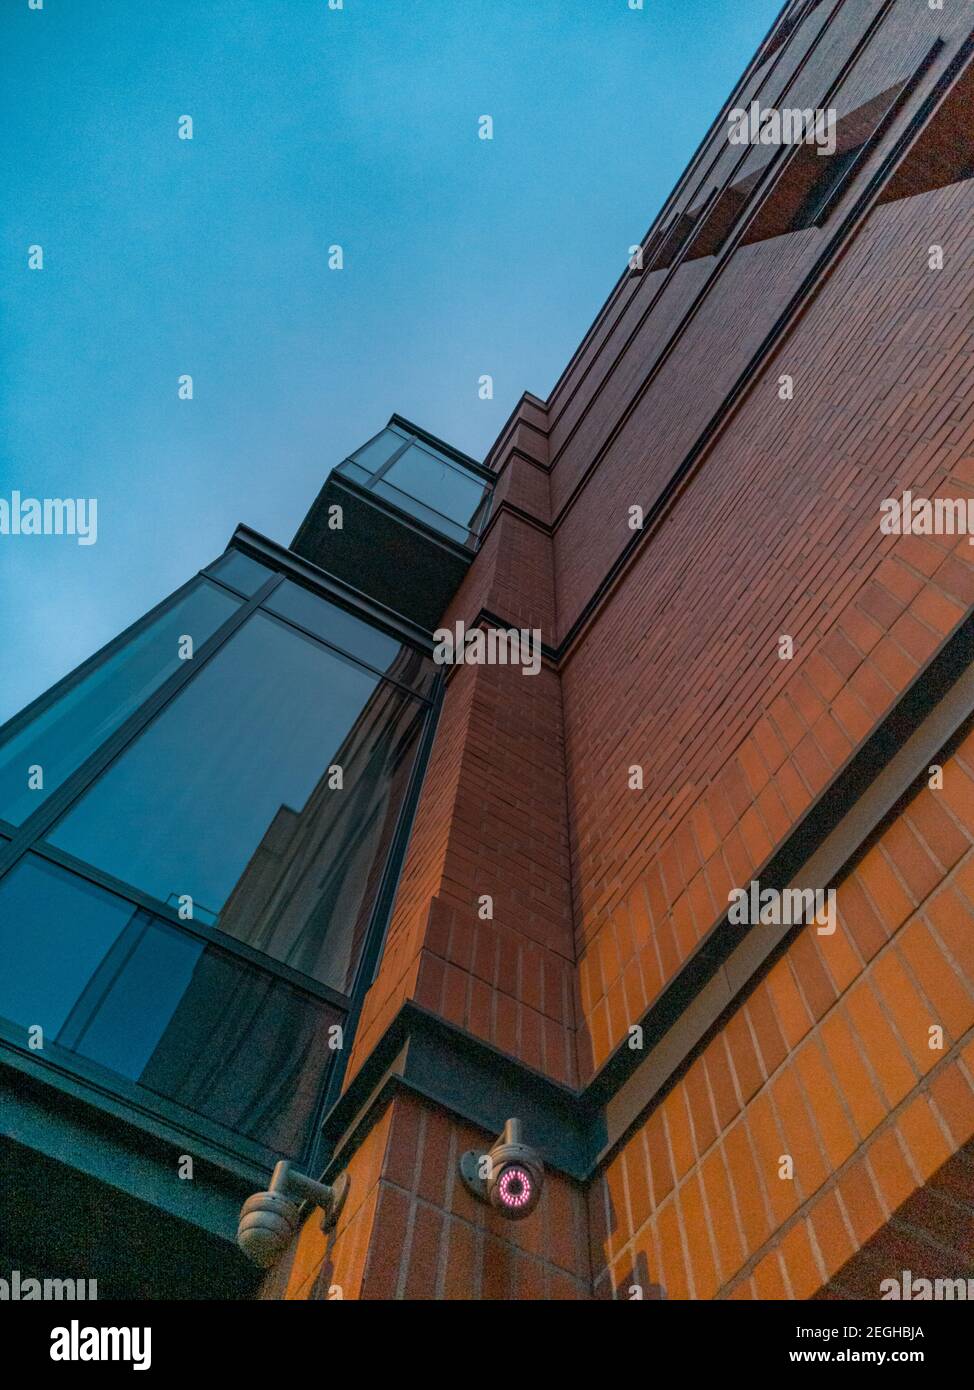 Vue sur le bâtiment moderne avec murs en briques rouges et grandes fenêtres Banque D'Images